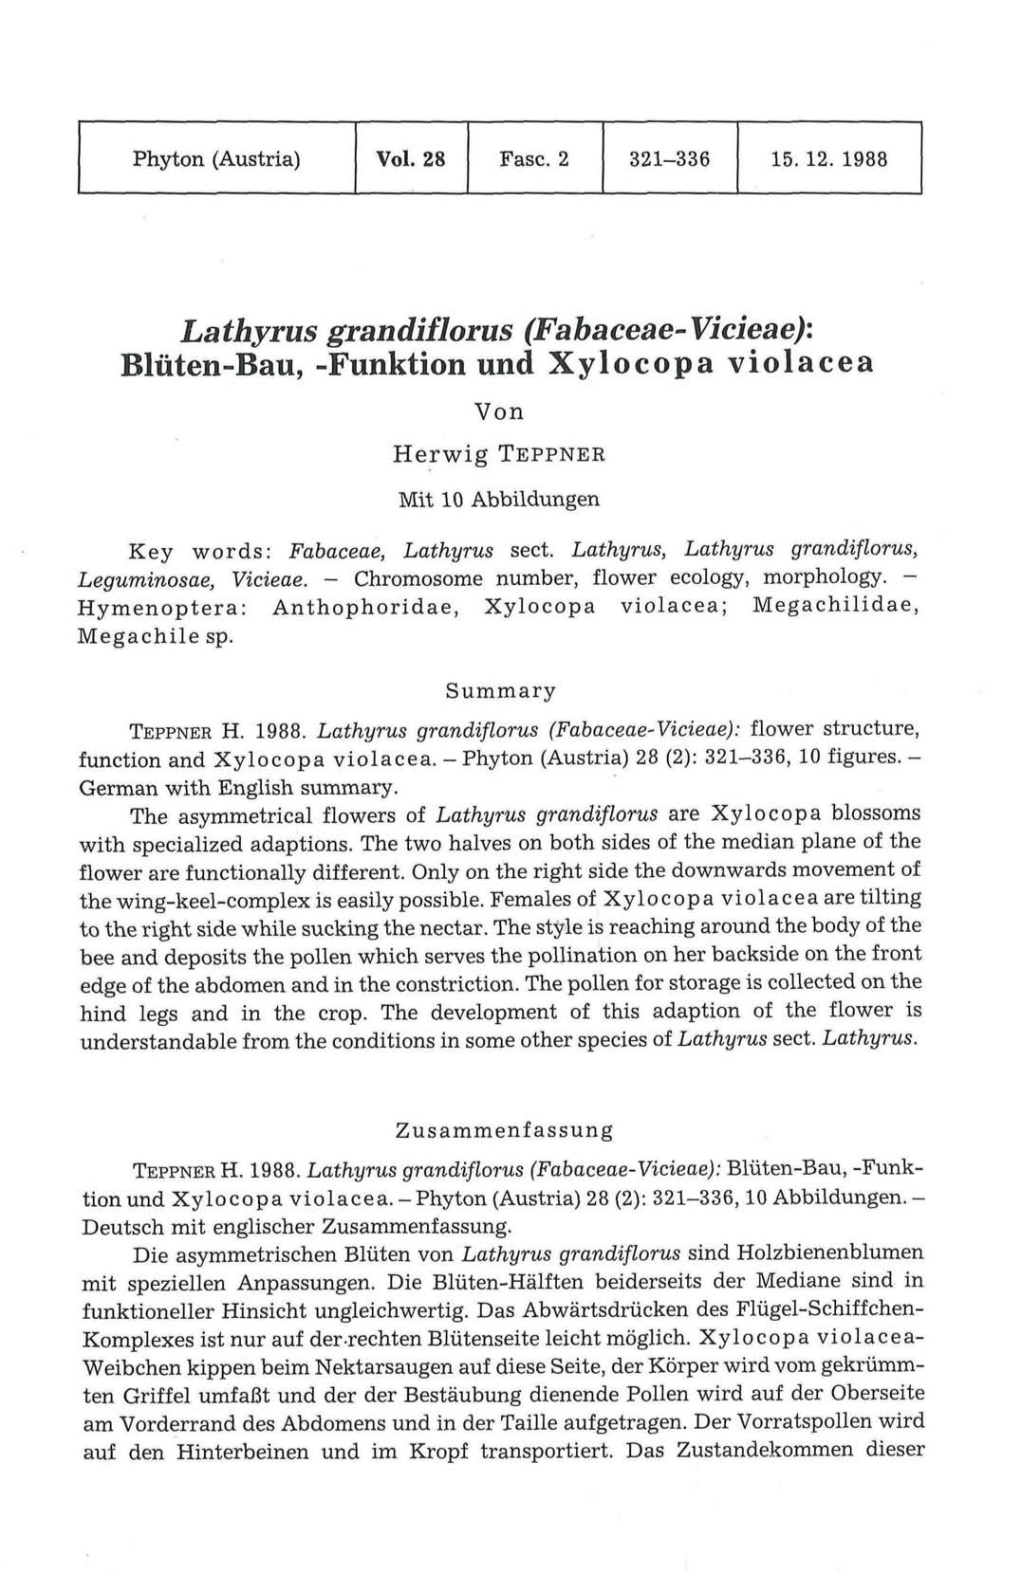 Lathyrus Grandiflorus (Fabaceae-Vicieae): Blüten-Bau, -Funktion Und Xylocopa Violacea Von Herwig TEPPNER Mit 10 Abbildungen